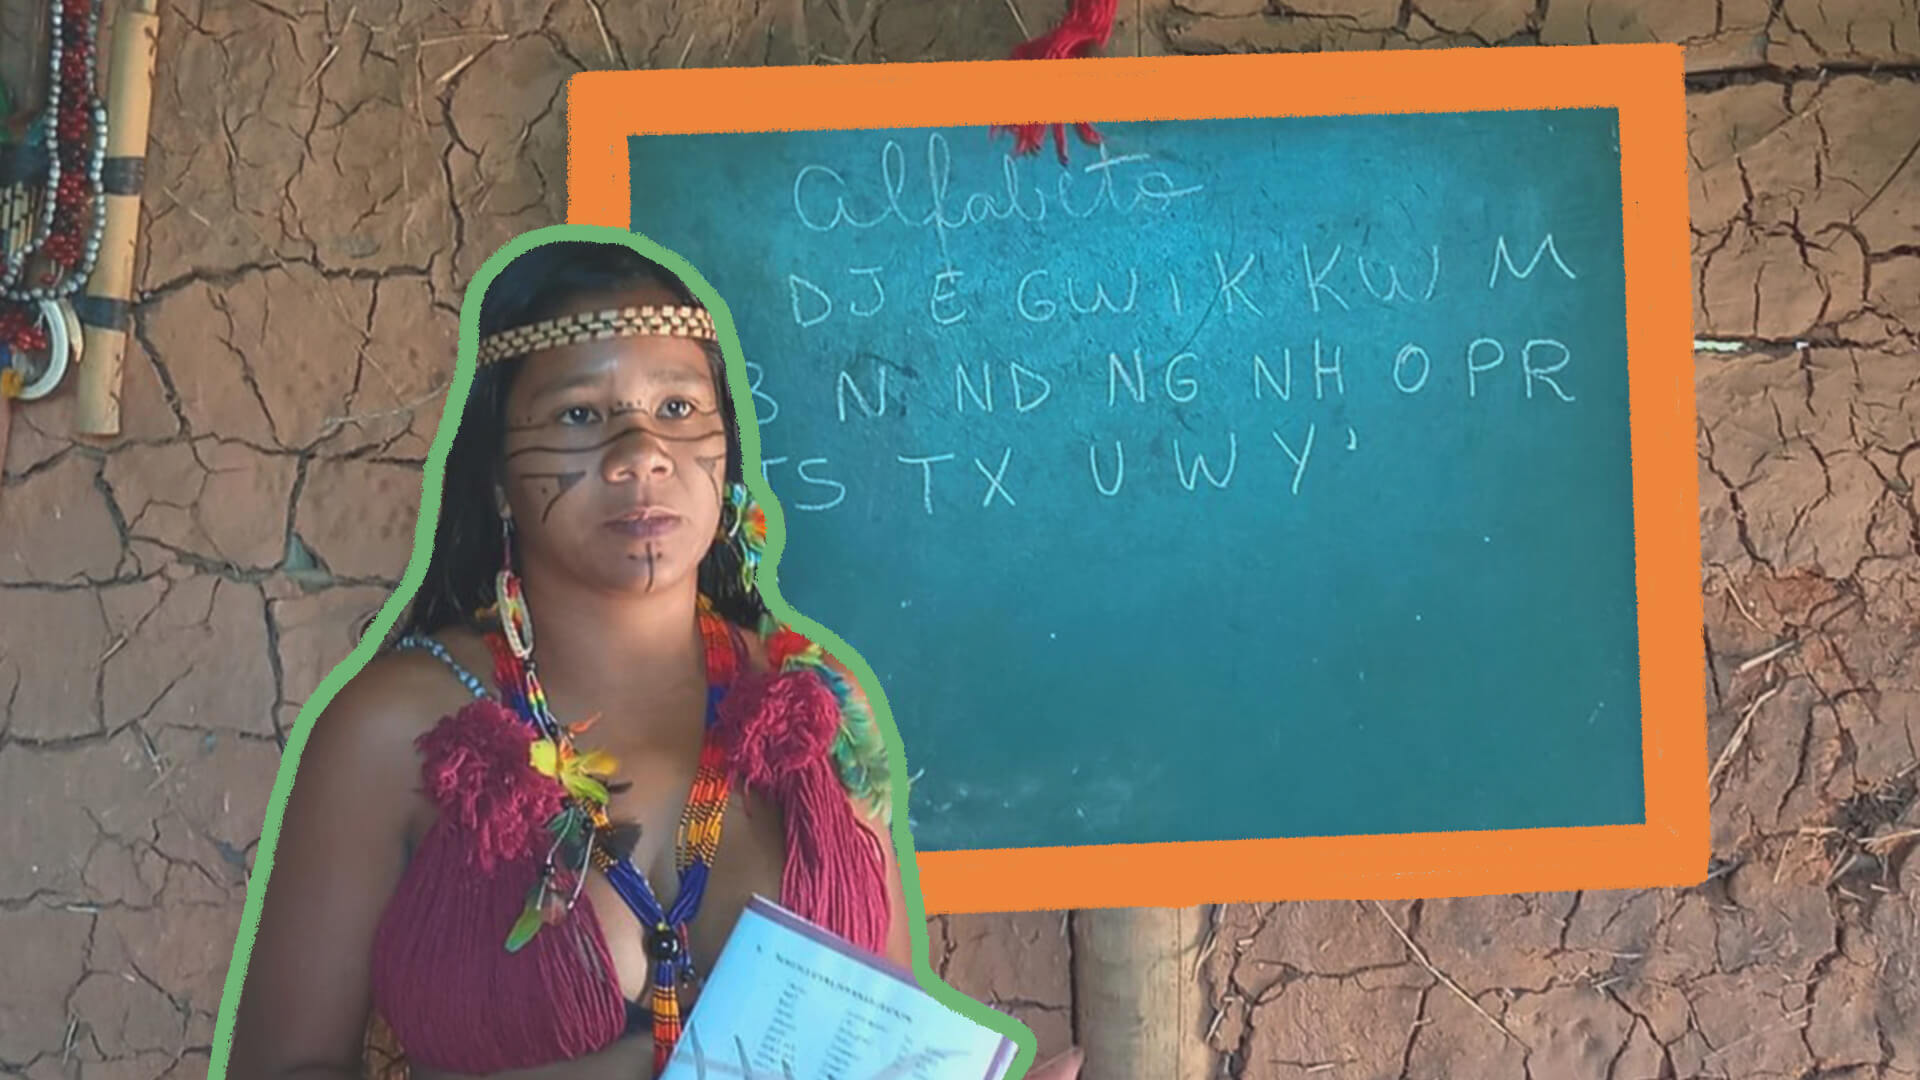 Na foto, a educadora indígena Guaciane está na frente de uma lousa. Ela tem pele escura e seu rosto possui grafismos indígenas. A lousa mostra letras do alfabeto tupi-guarani.